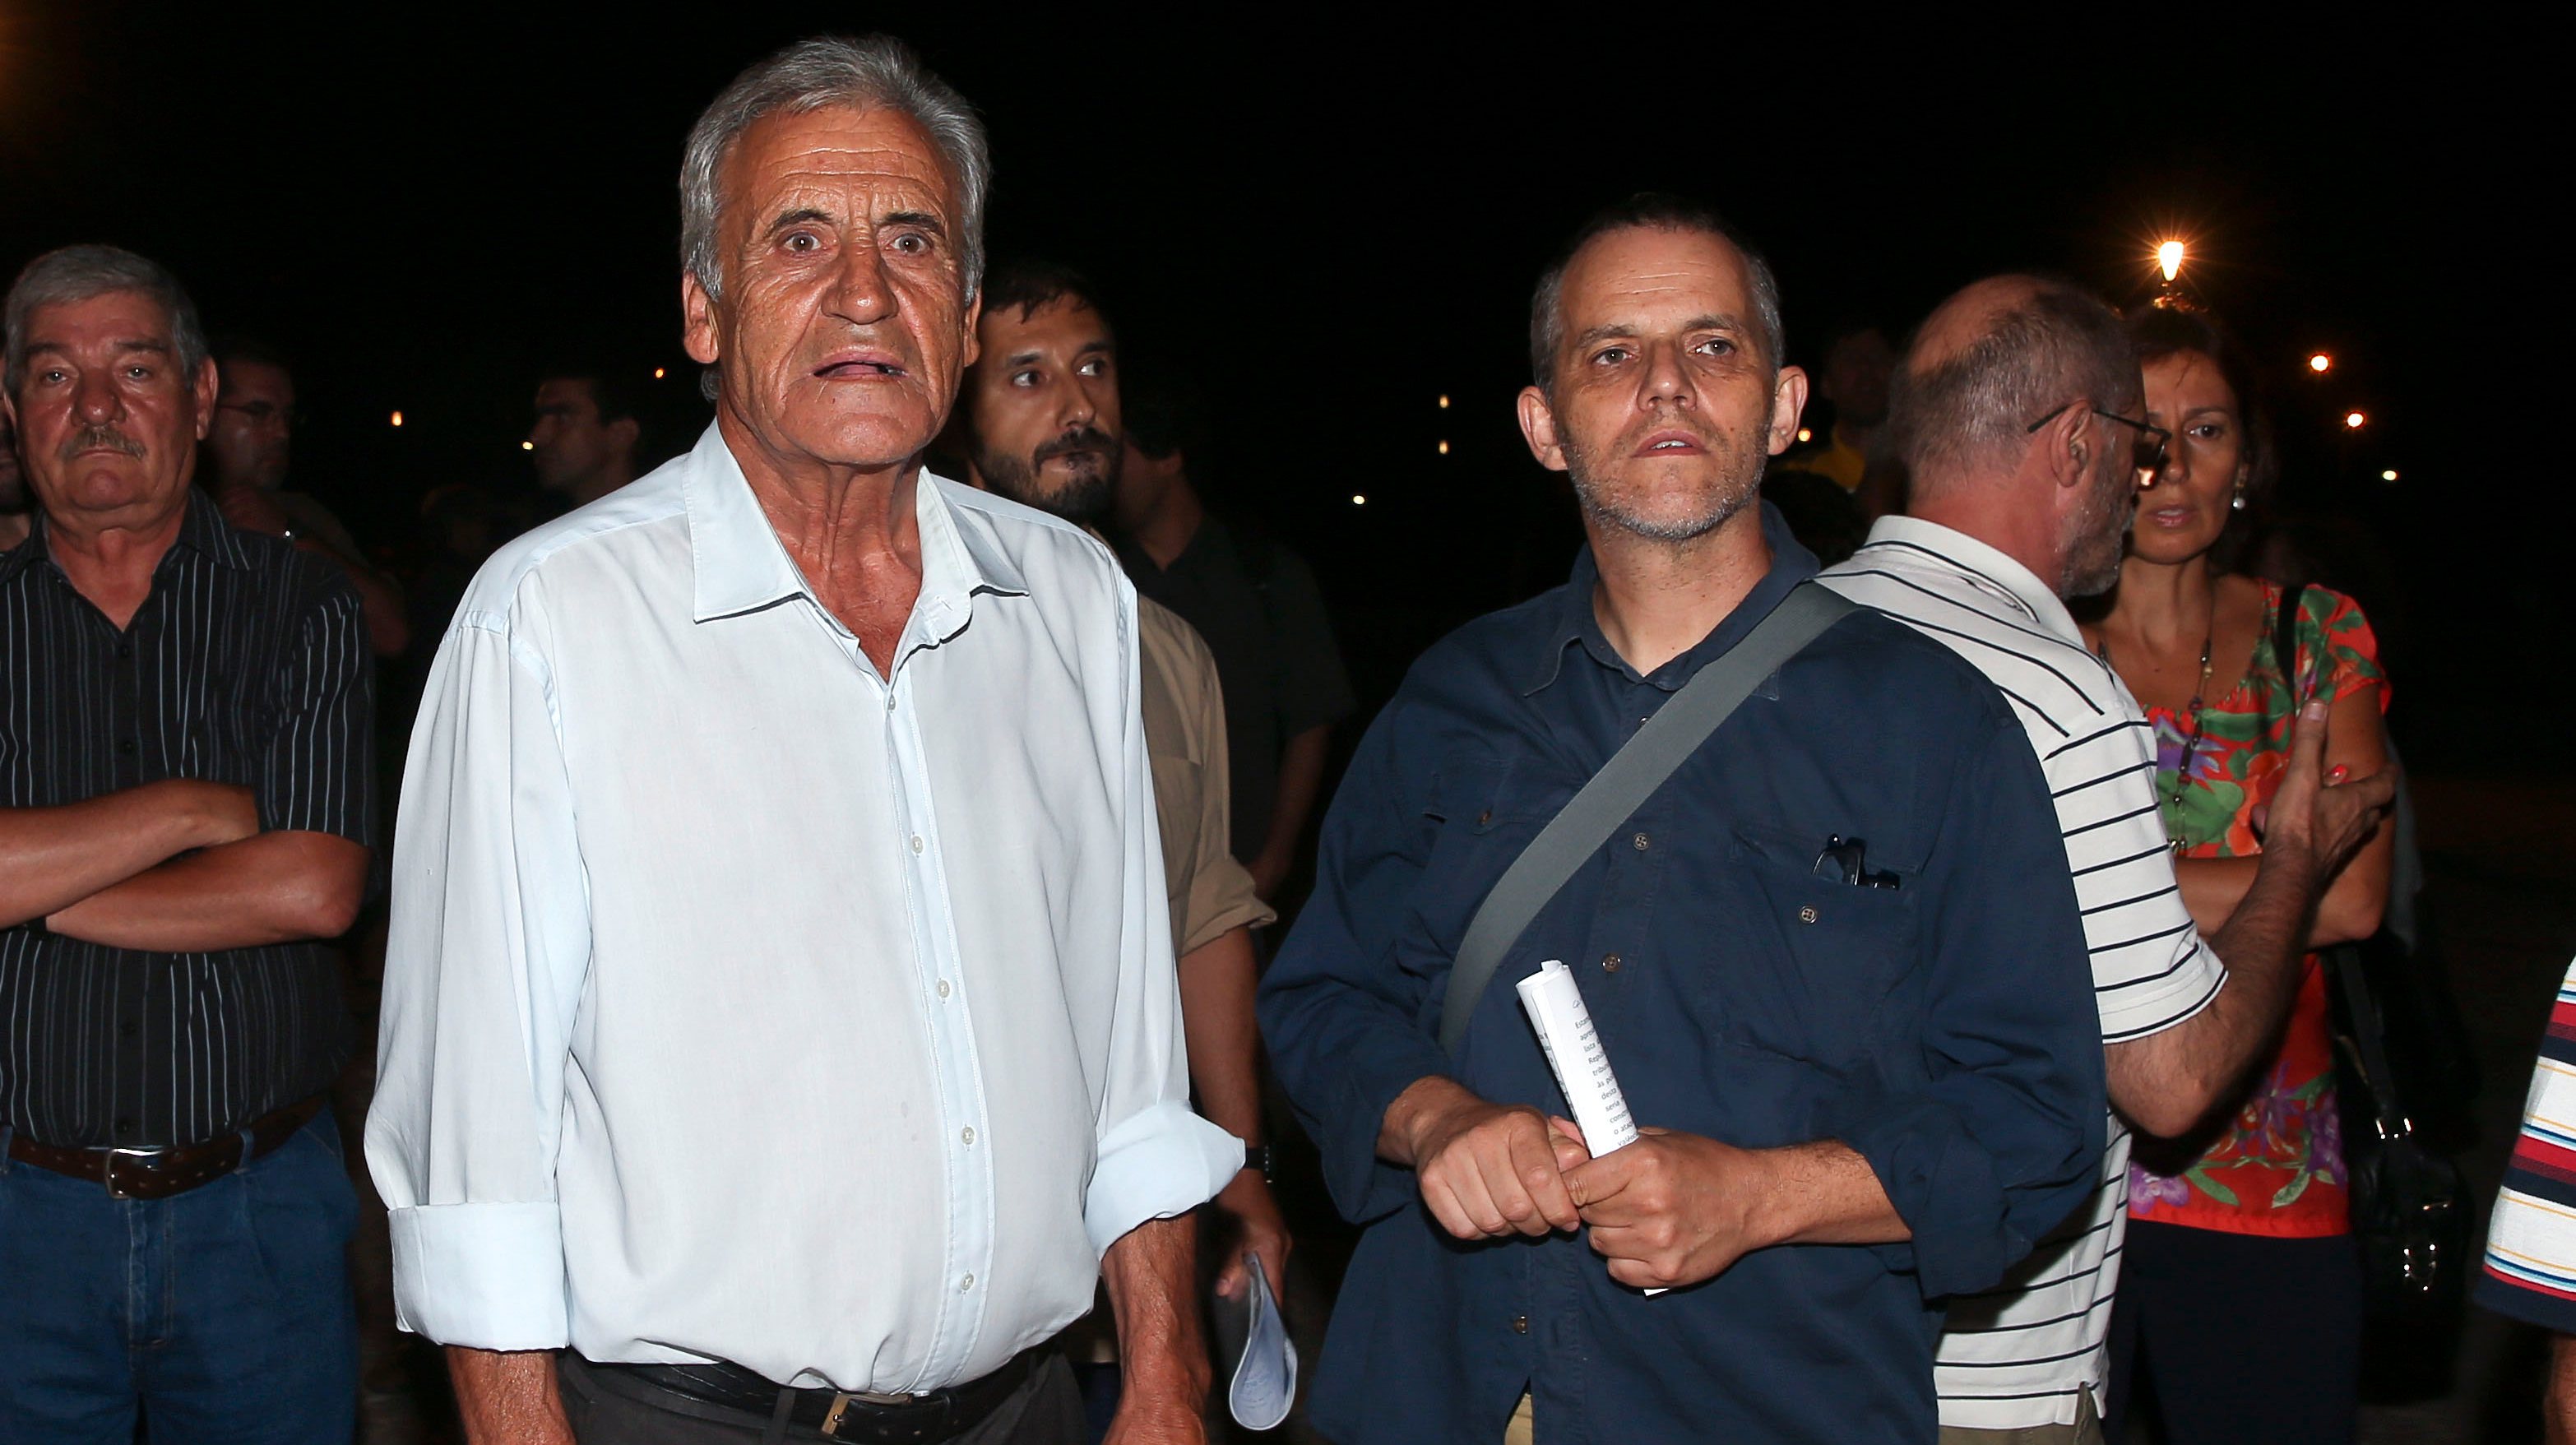 Manuel Pires da Rocha (à direita) é dirigente do PCP. Nesta foto datada de 2015 está ao lado de Jerónimo de Sousa, ex-líder do PCP / LUSA